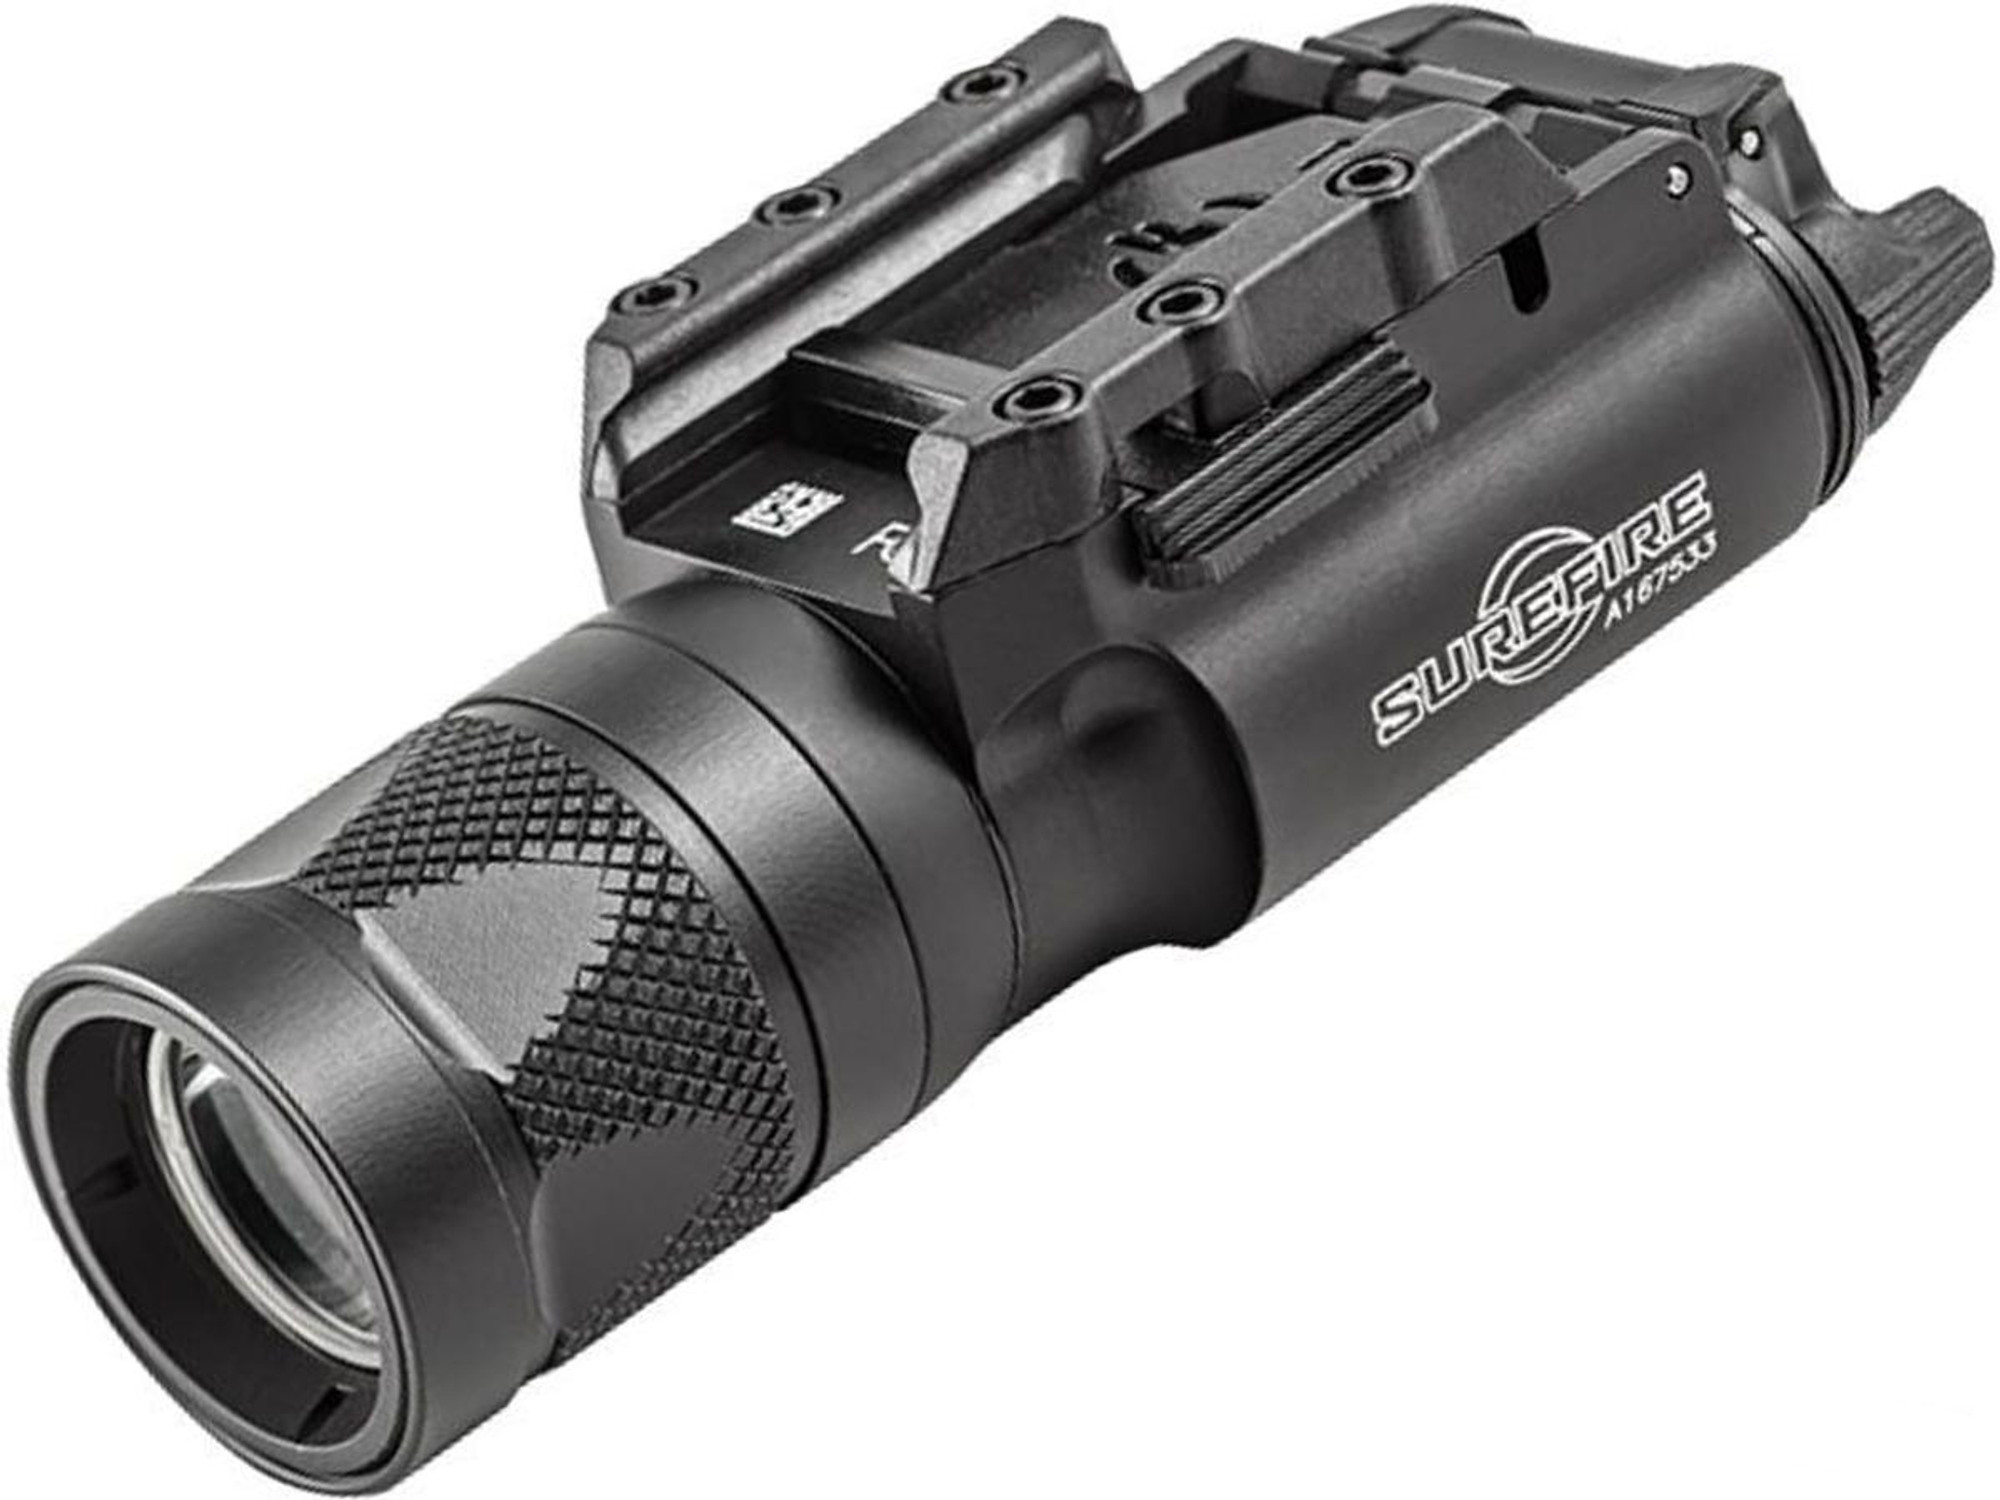 Surfire X300V Infrared / White LED Handgun Light with RailLock Mounting System